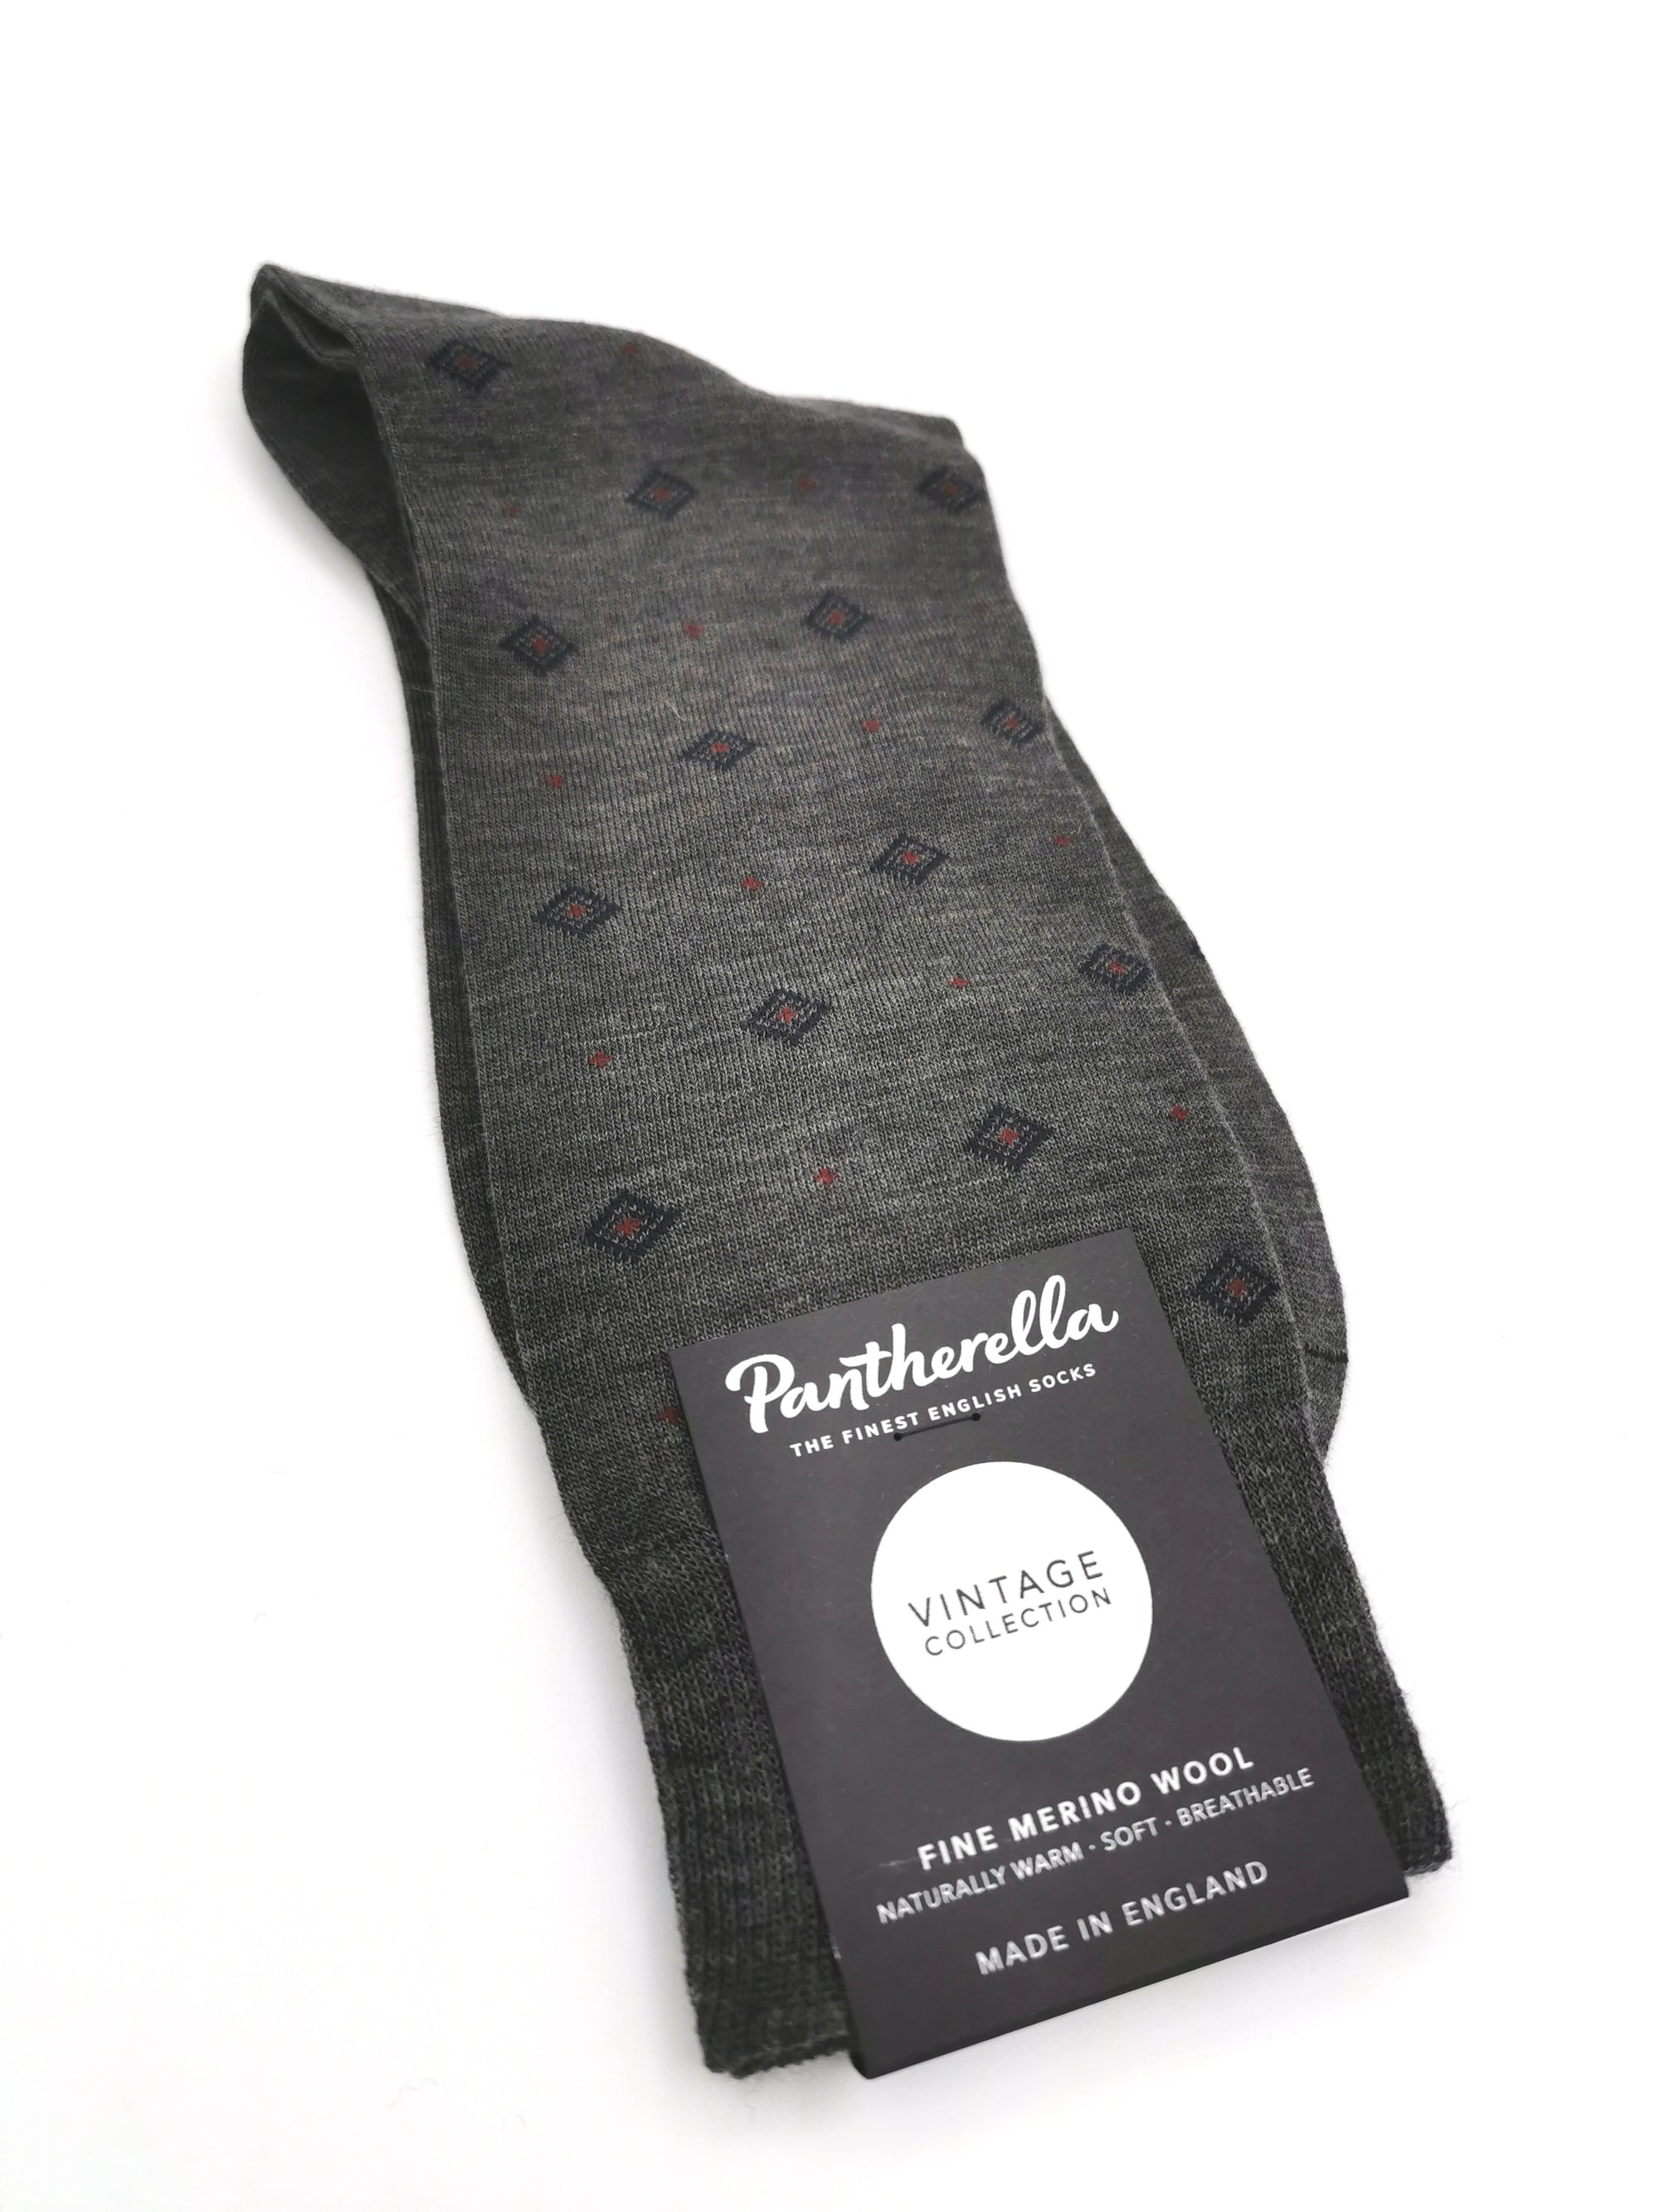 Pantherella Fine Merino Wool diamond pattern socks